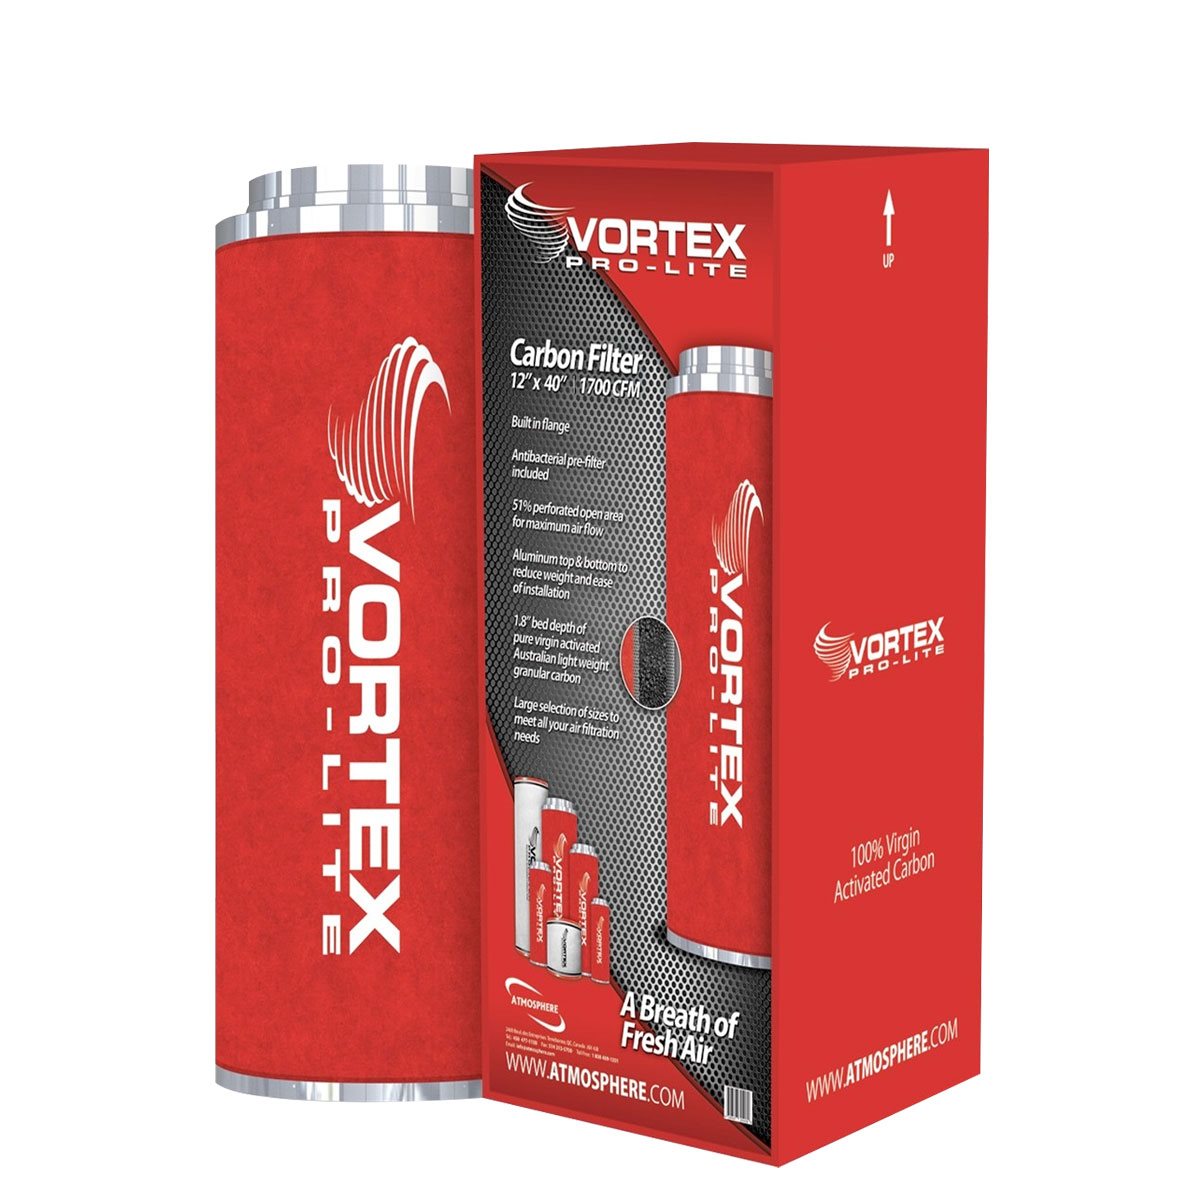 Vortex Pro-Lite Filter 6" x 24" (550 CFM)